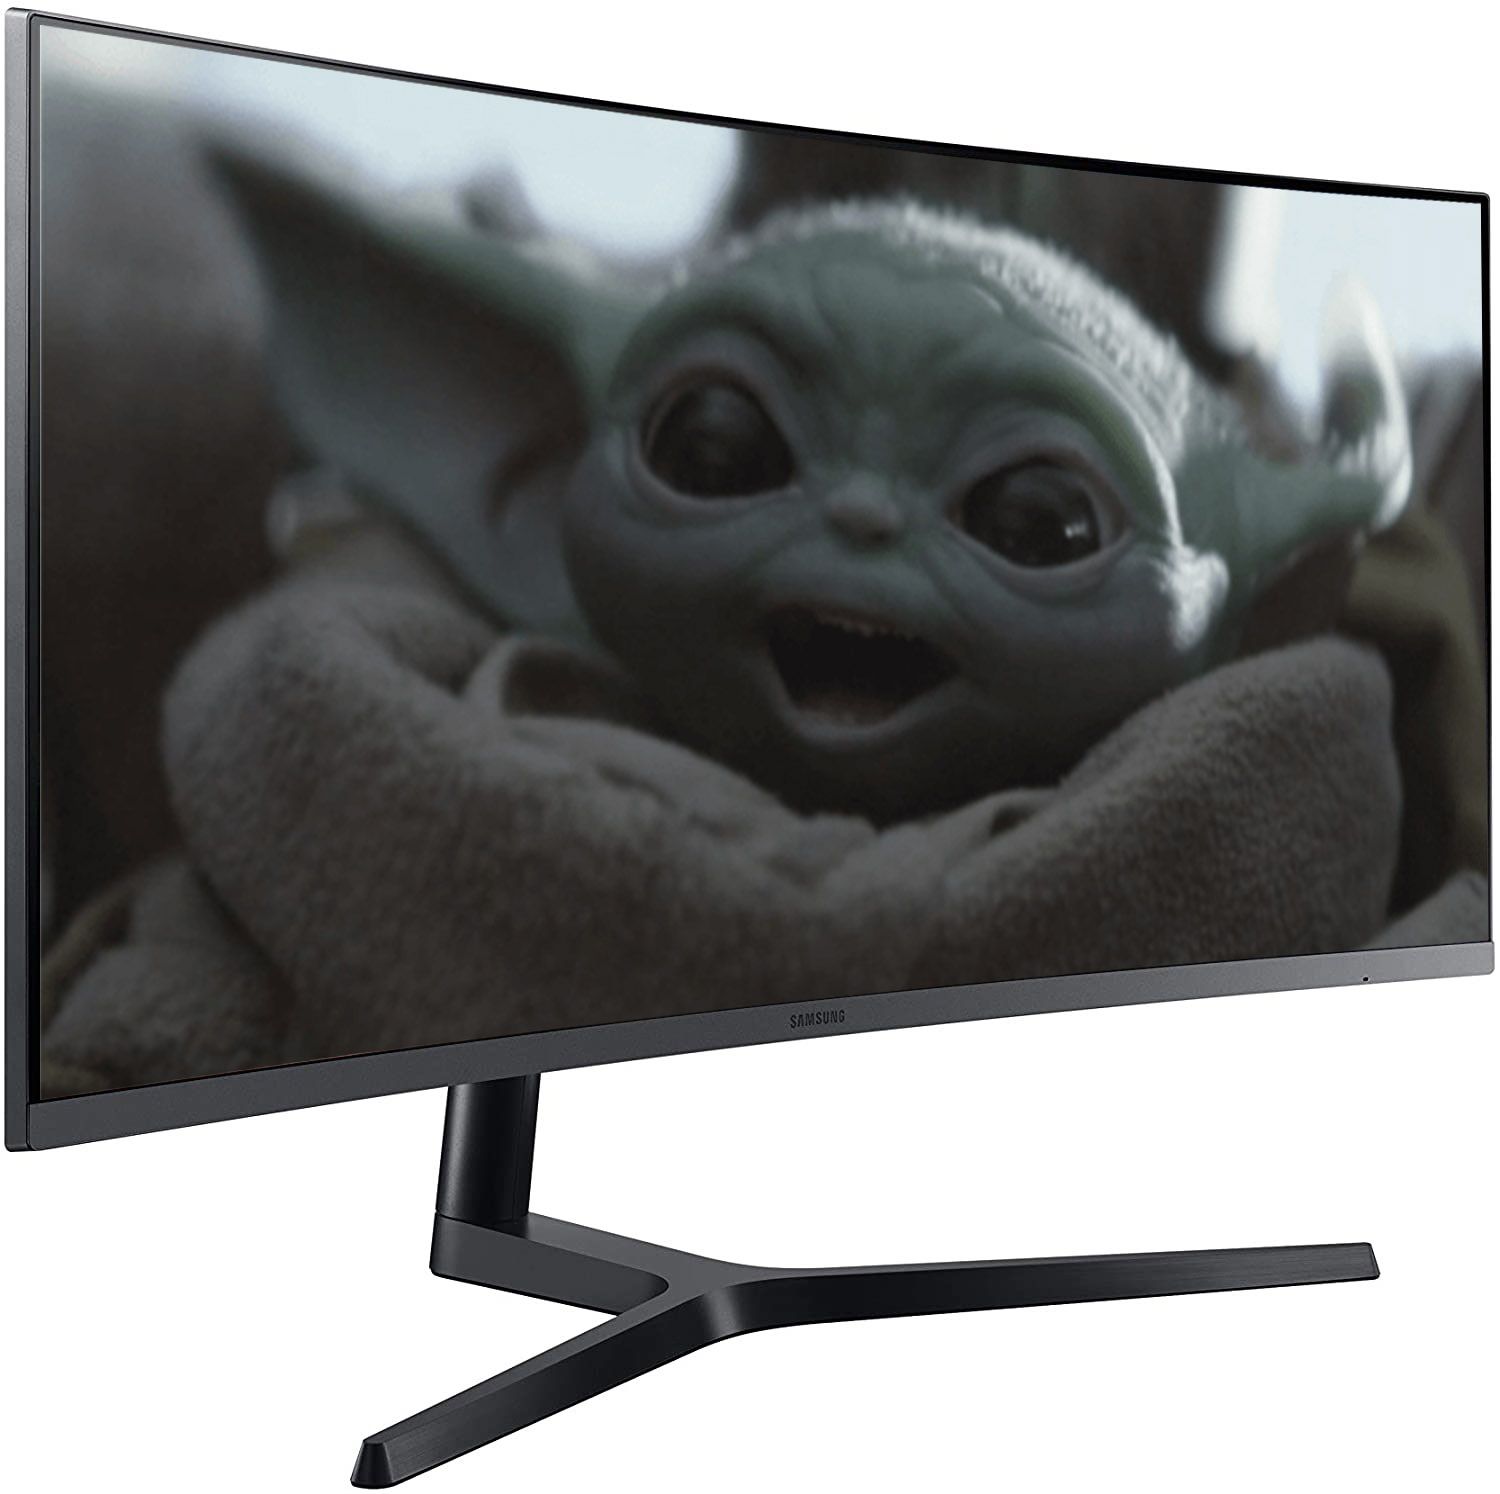 Baby Yoda on a Samsung monitor